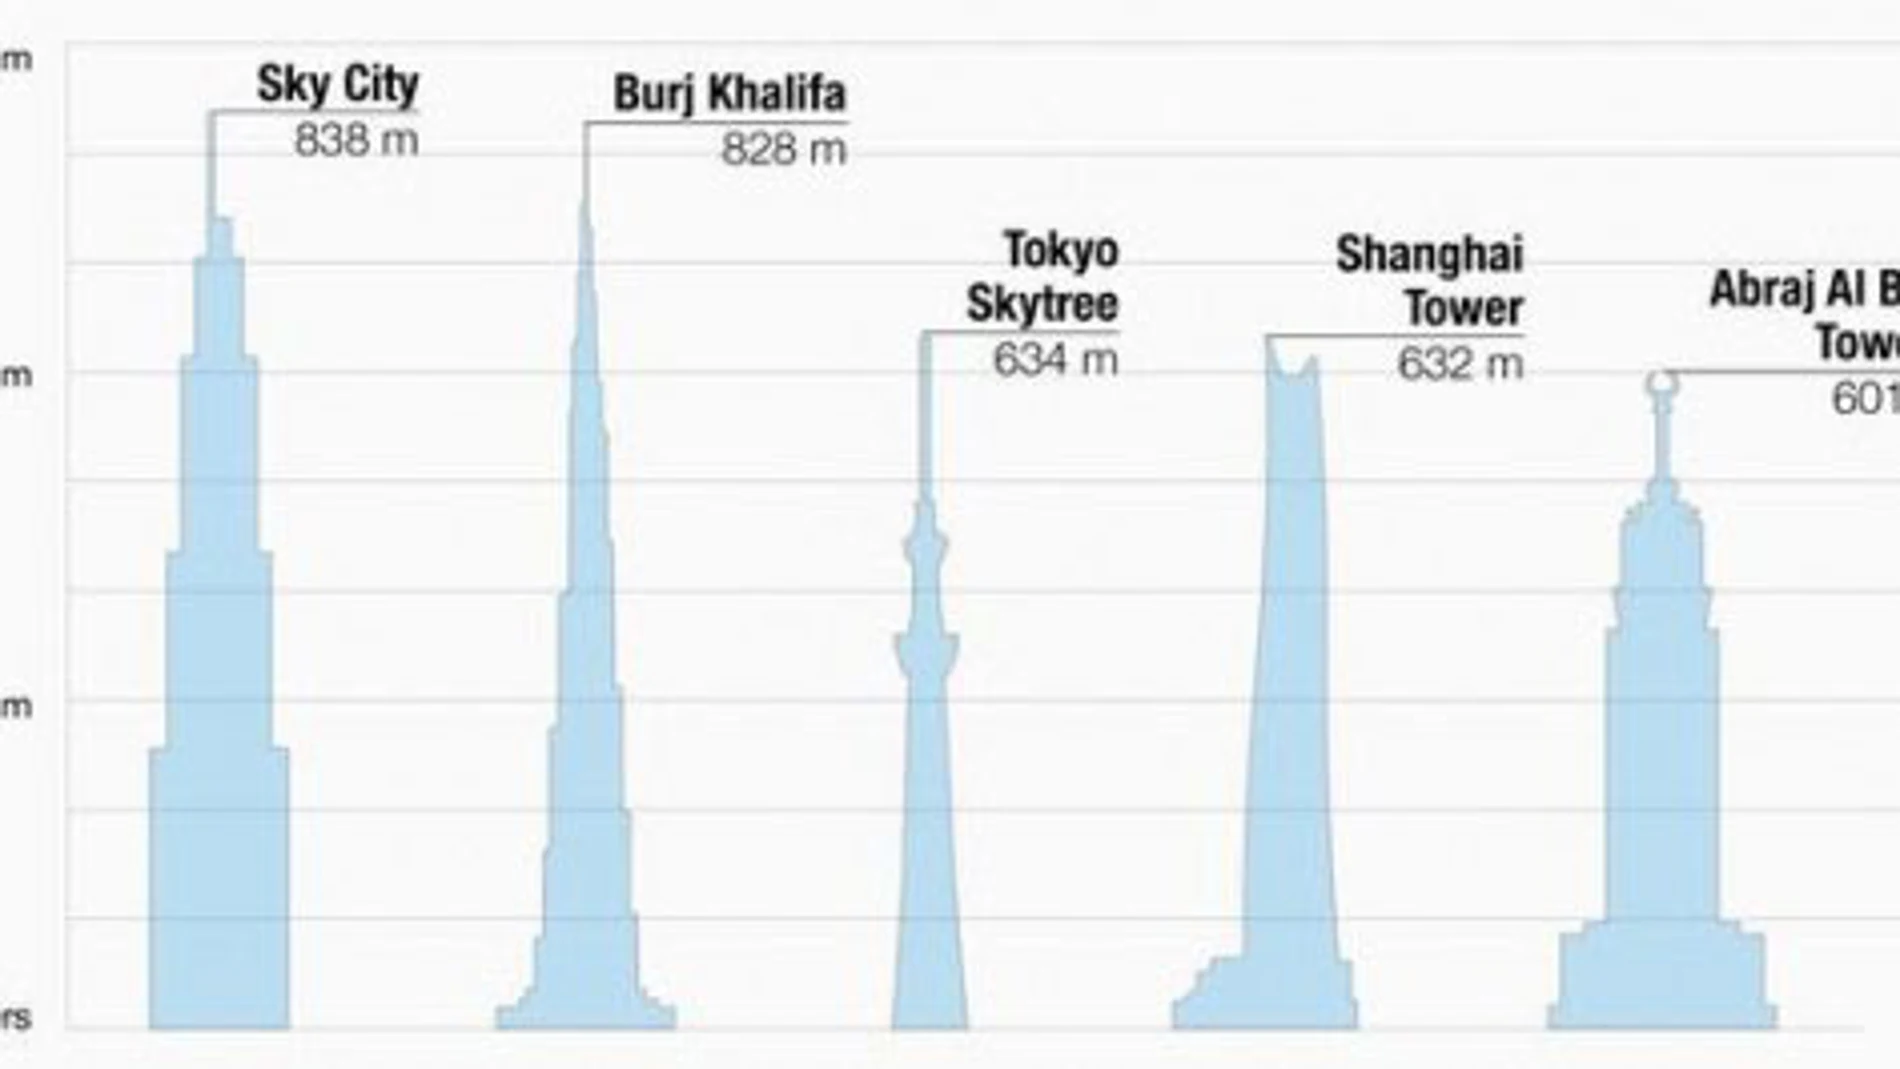 China levantará el edificio más alto del mundo en 90 días